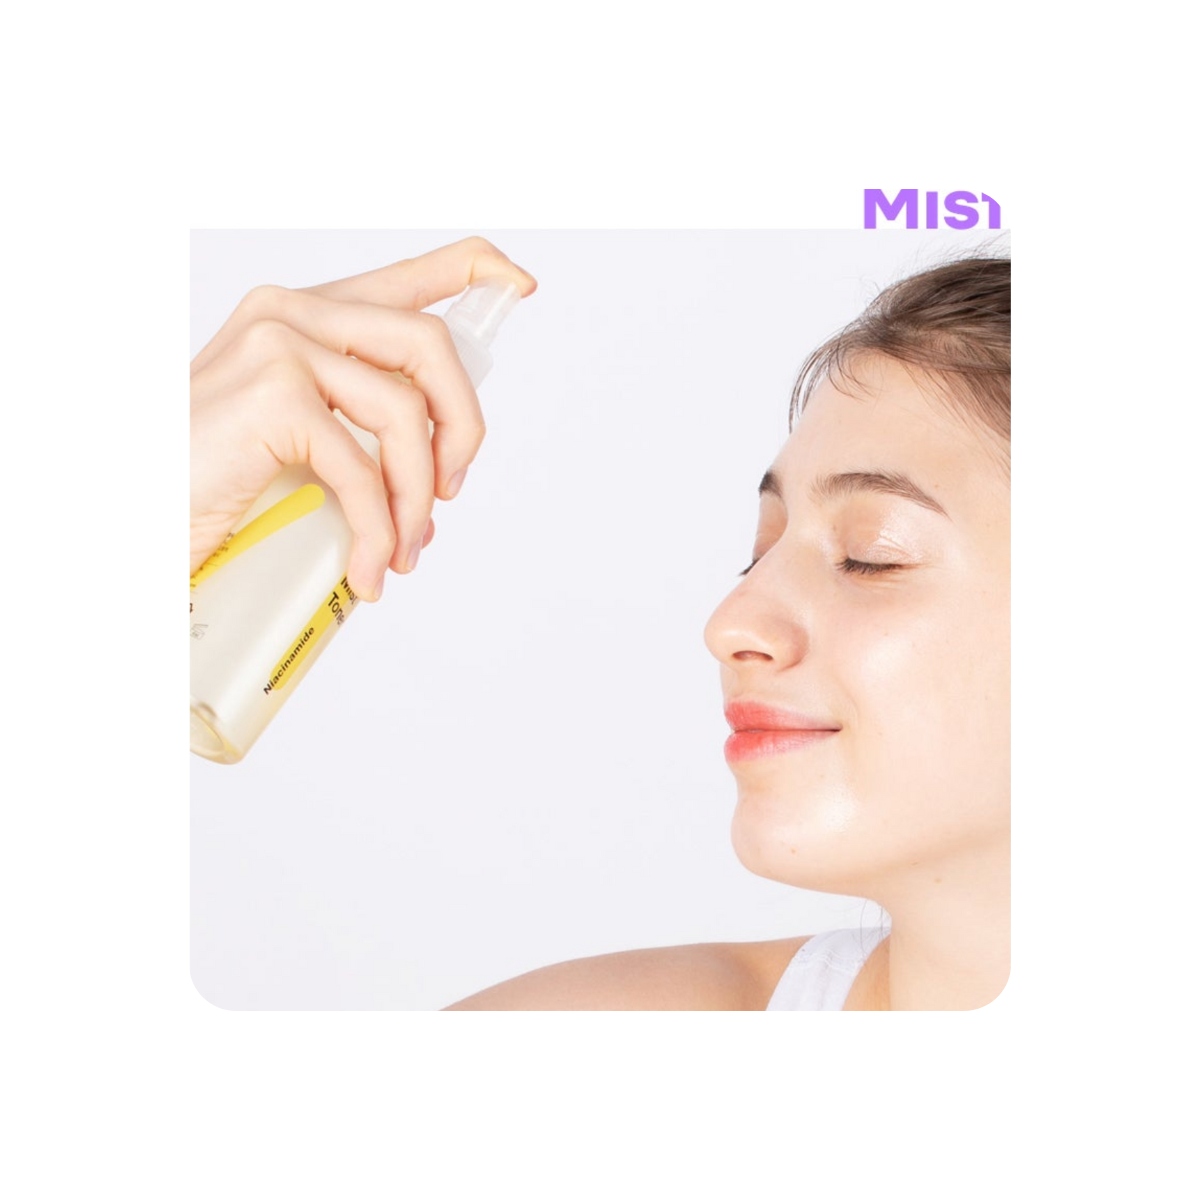 Tónicos al mejor precio: TIA'M Vita B3 Mist Toner, Tónico con Niacinamida, Vitamina C y Tranexámico de TIA'M en Skin Thinks - Piel Seca